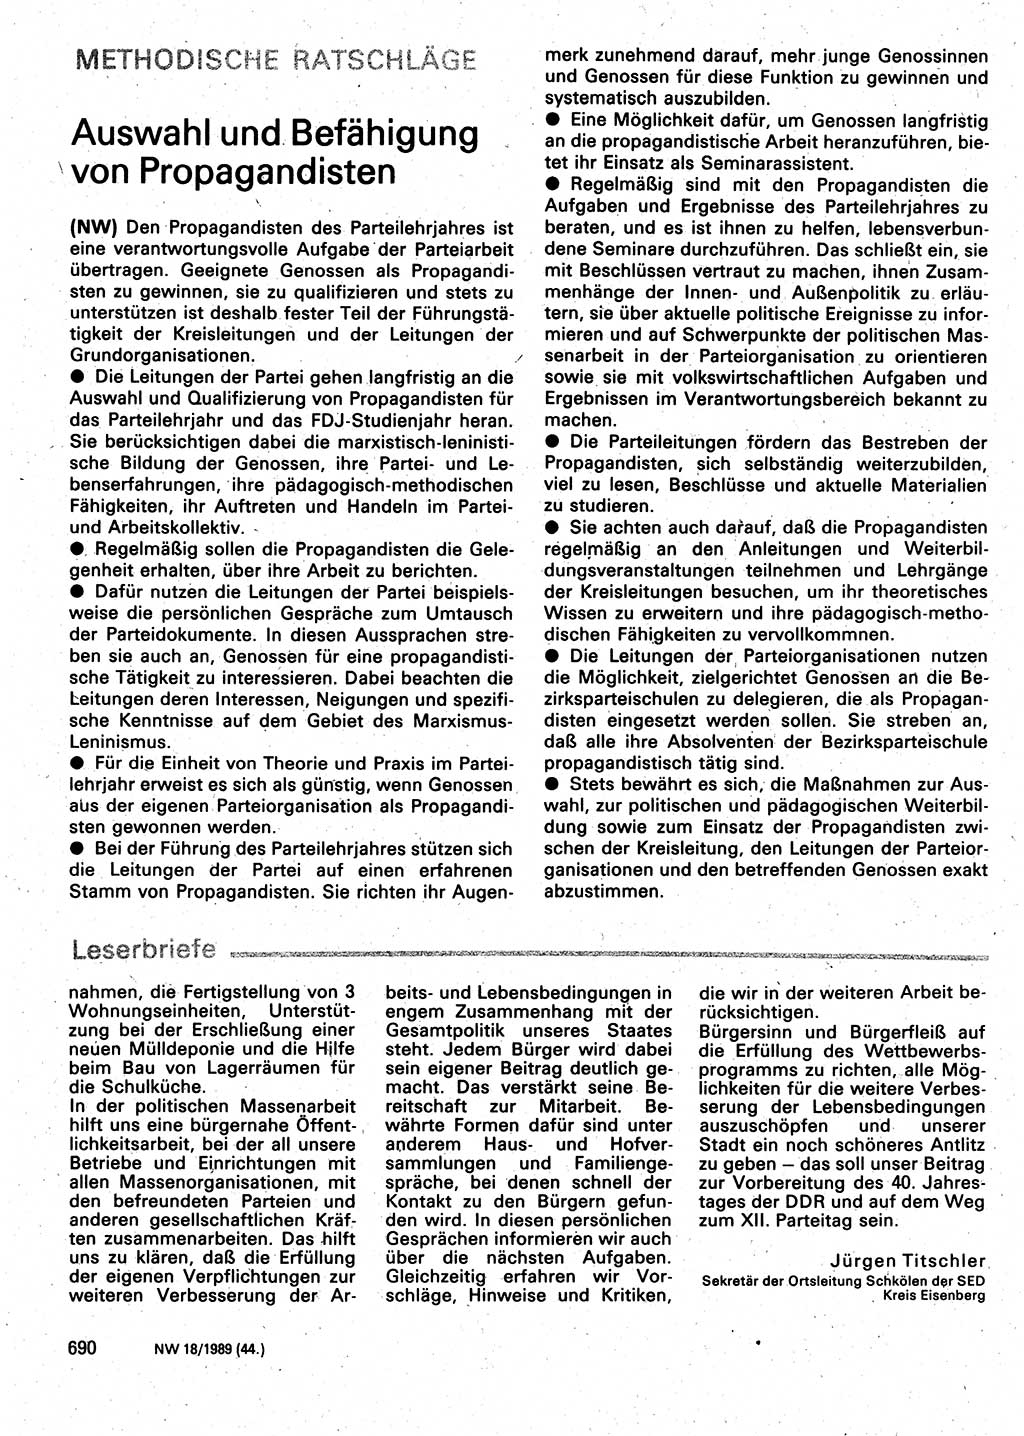 Neuer Weg (NW), Organ des Zentralkomitees (ZK) der SED (Sozialistische Einheitspartei Deutschlands) für Fragen des Parteilebens, 44. Jahrgang [Deutsche Demokratische Republik (DDR)] 1989, Seite 690 (NW ZK SED DDR 1989, S. 690)